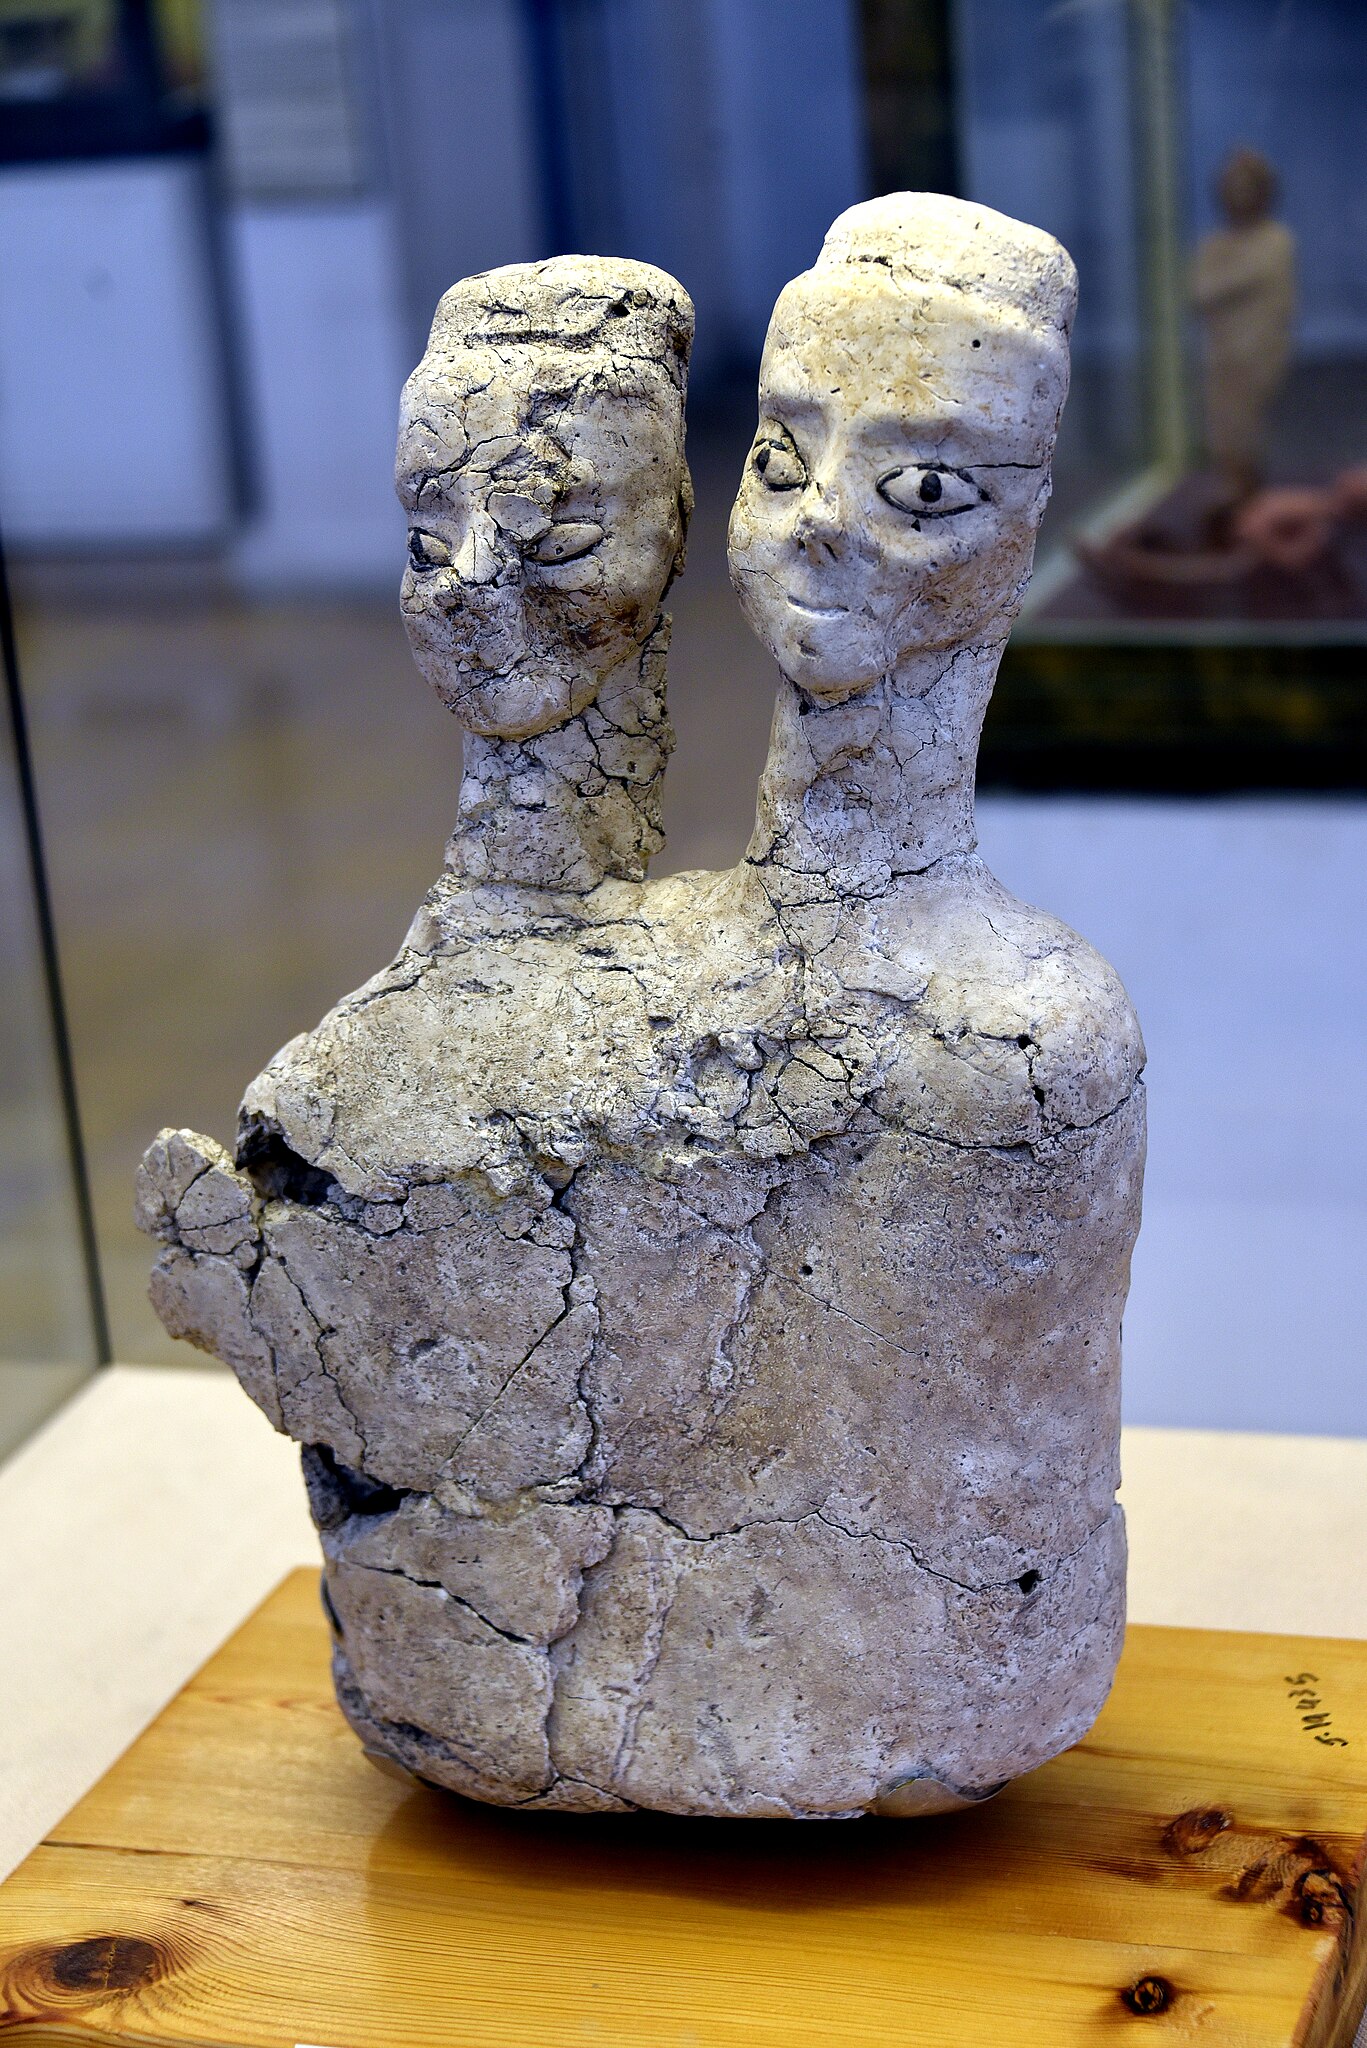 File:Double-headed from Ain Ghazal, Amman, Jordan Archaeological Museum.jpg - Wikimedia Commons